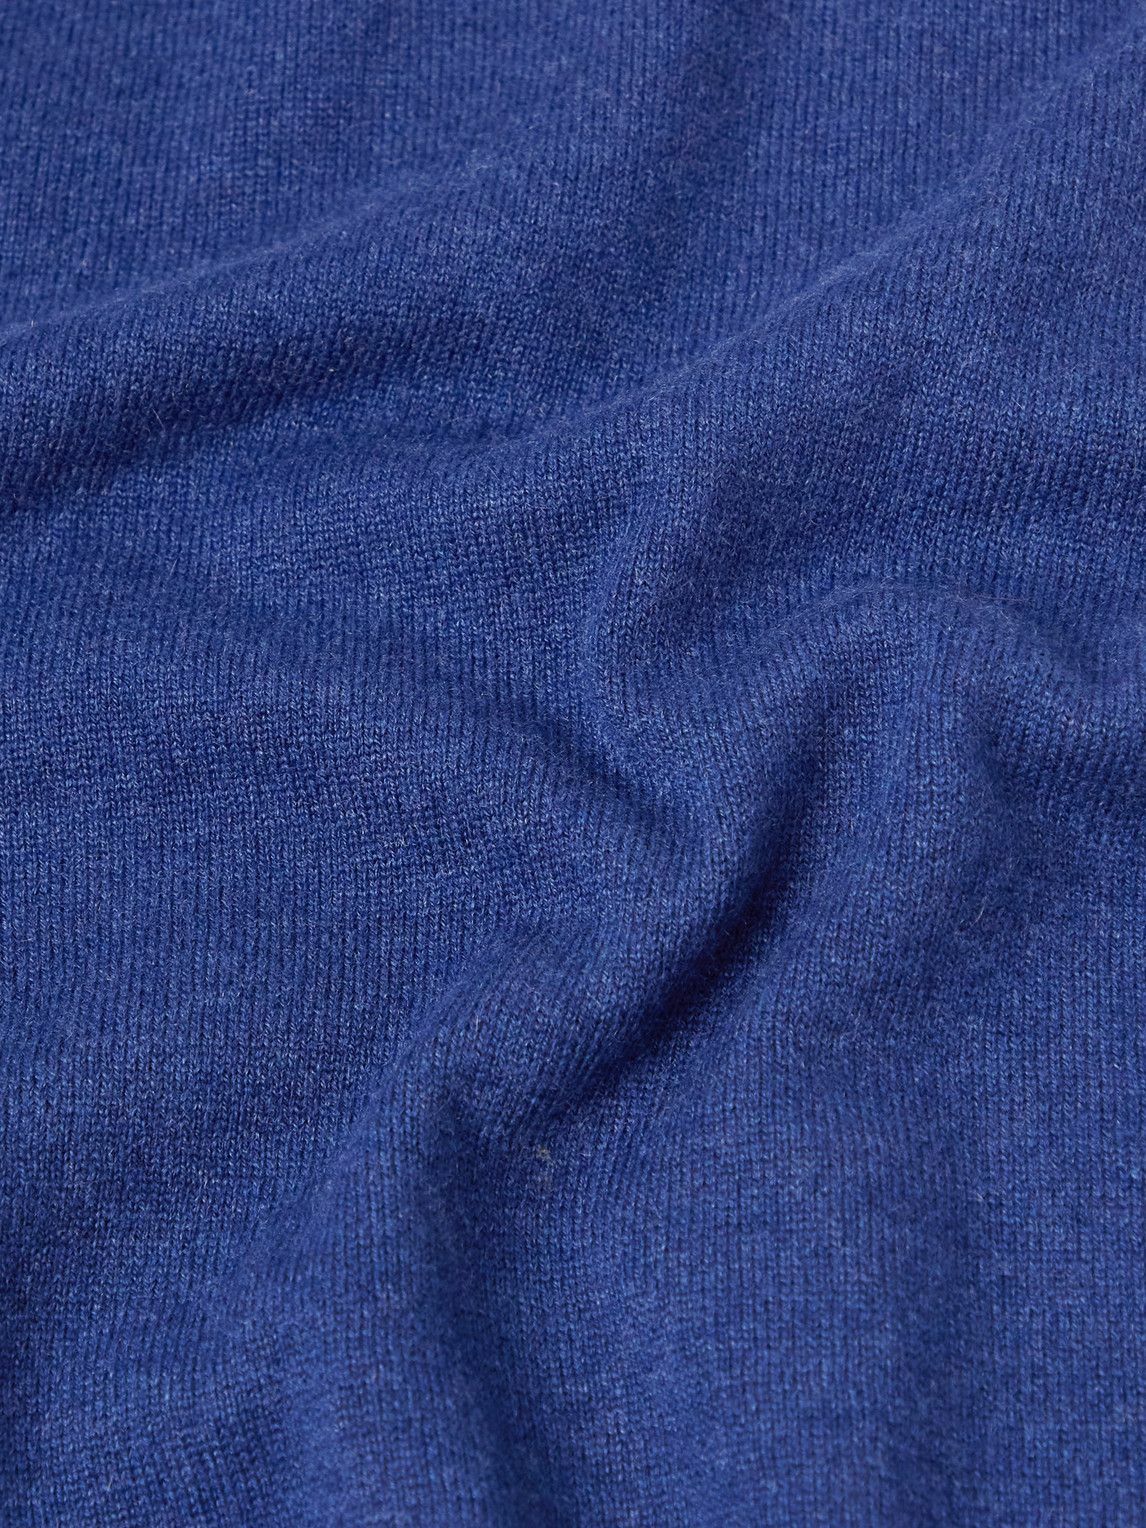 Brunello Cucinelli - Cashmere Polo Shirt - Blue Brunello Cucinelli